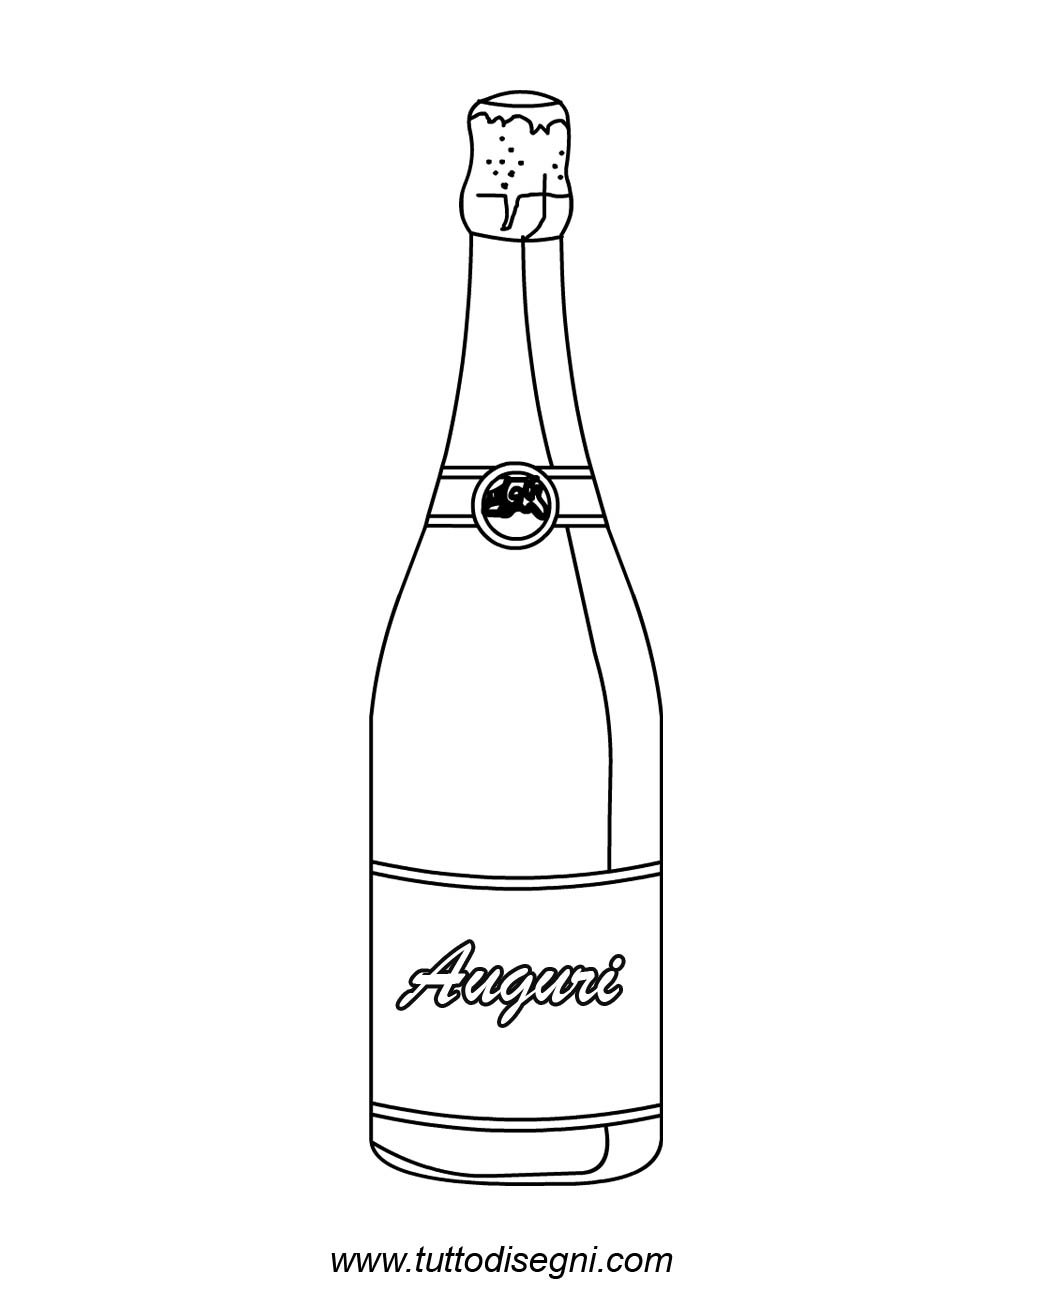 bottiglia champagne2